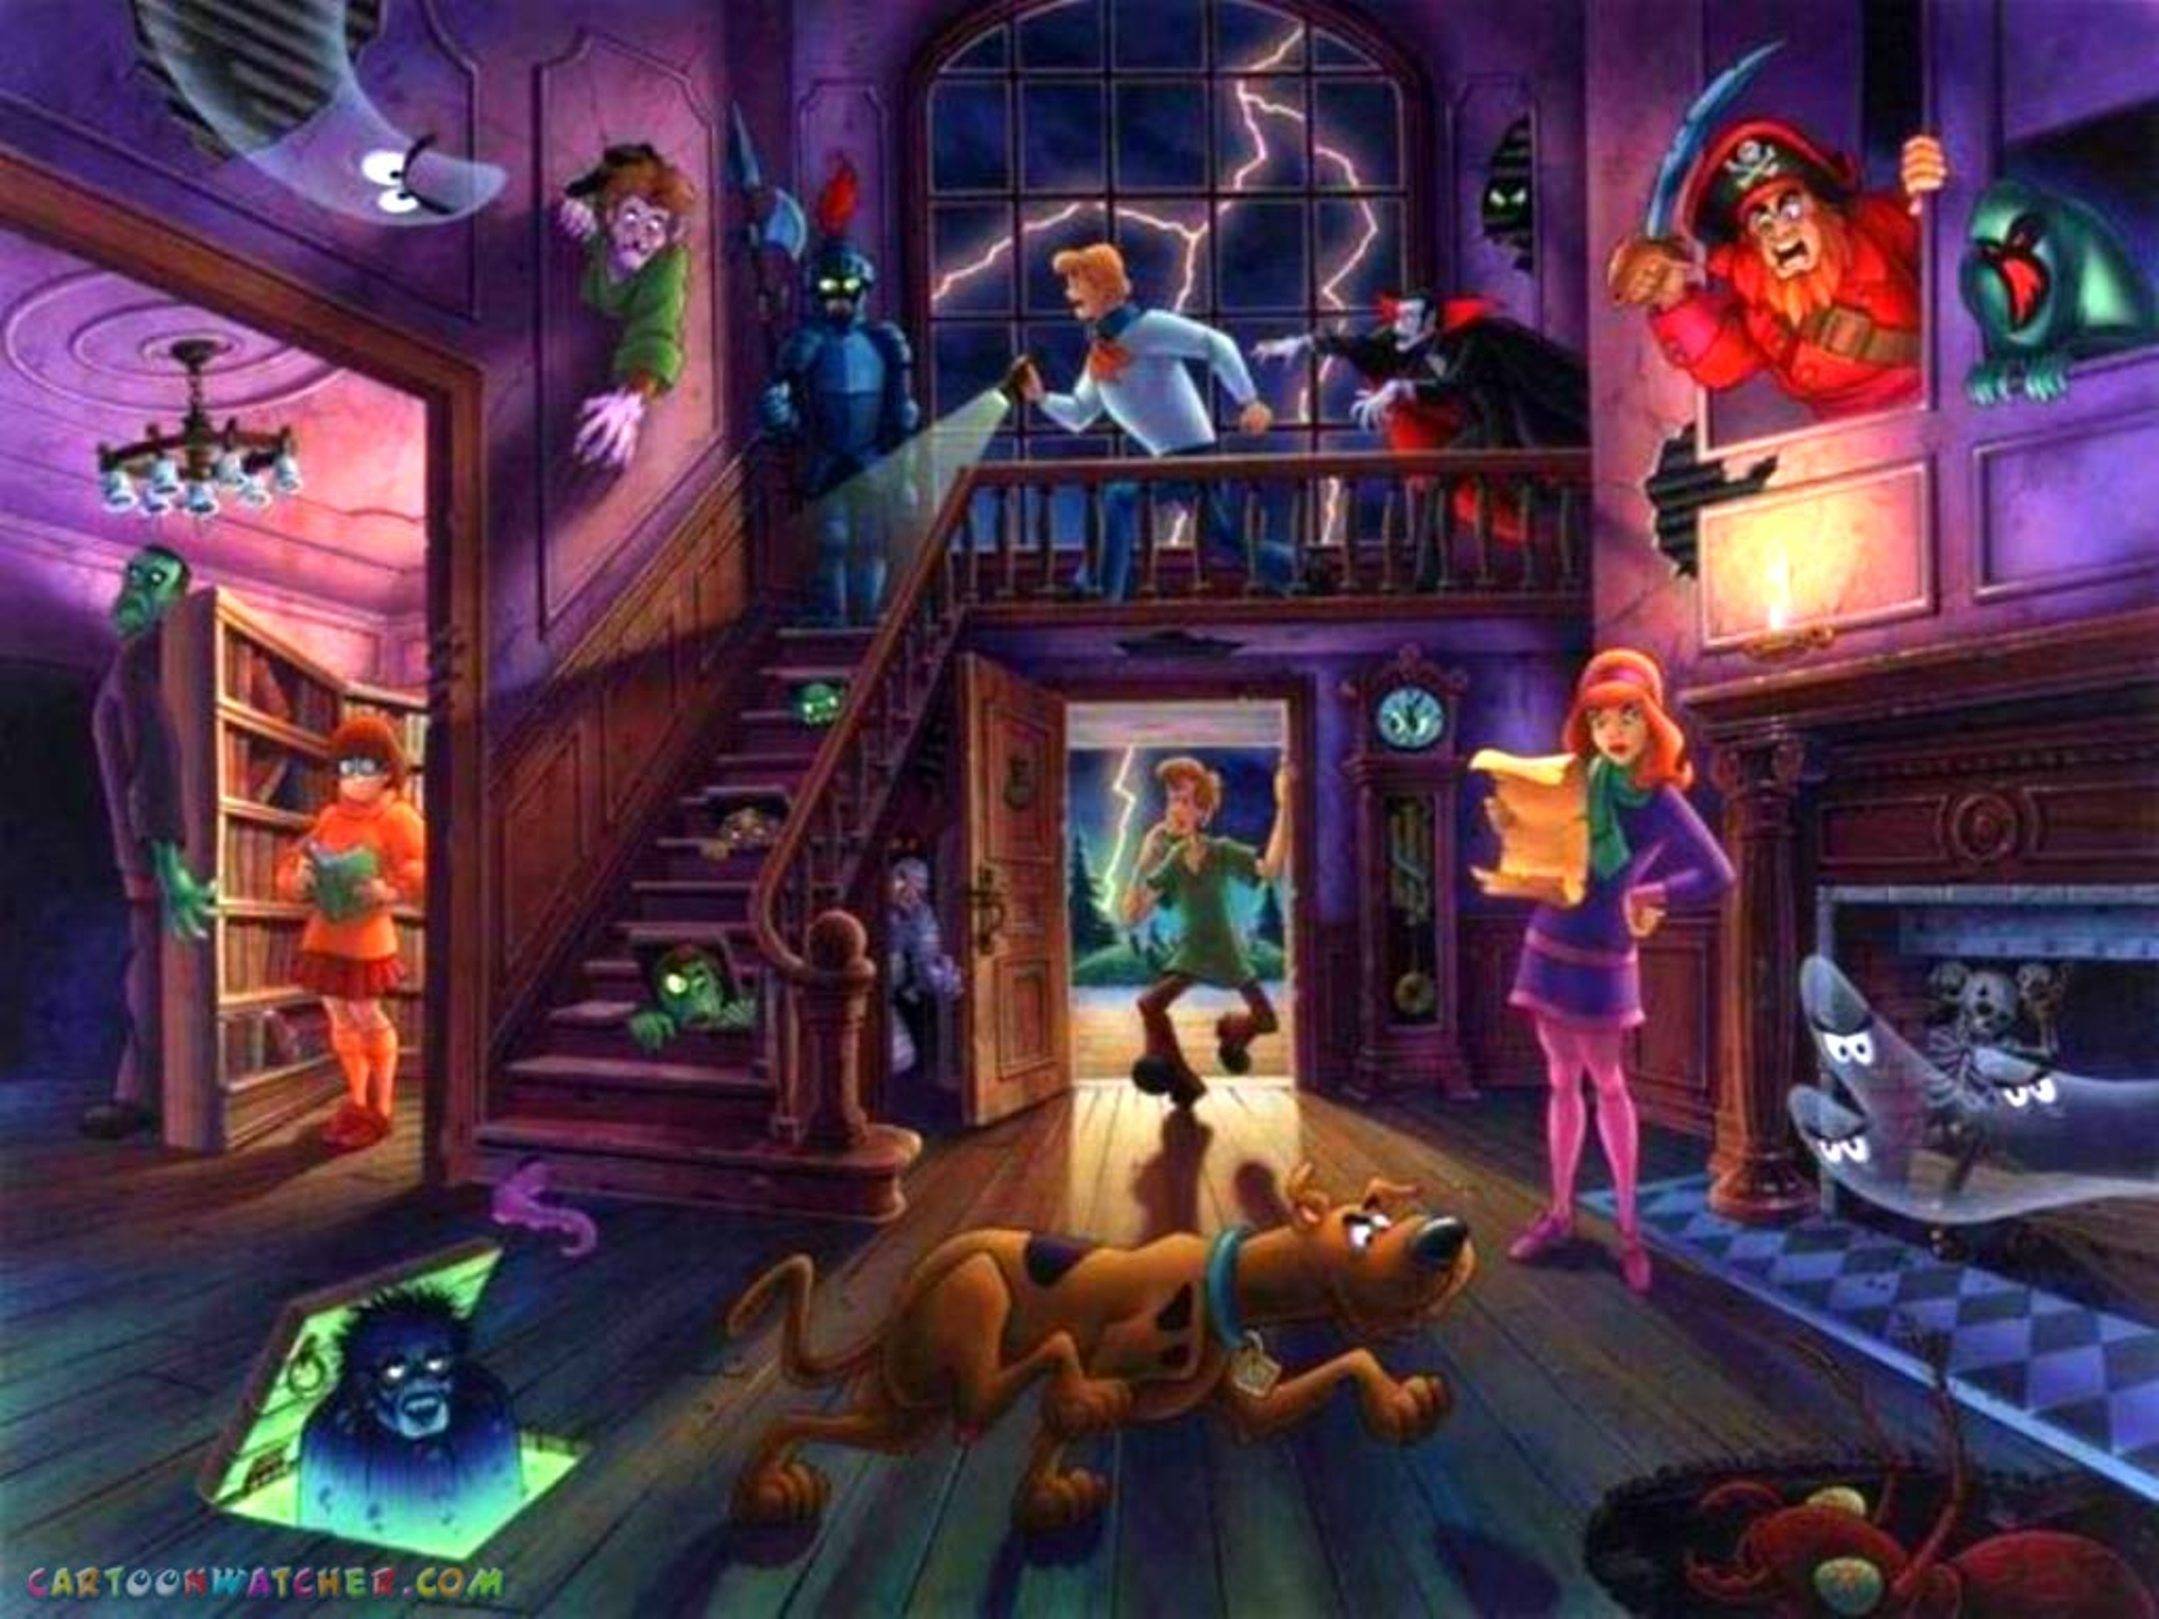 Scooby Doo Halloween Wallpaper Free Scooby Doo Halloween Background